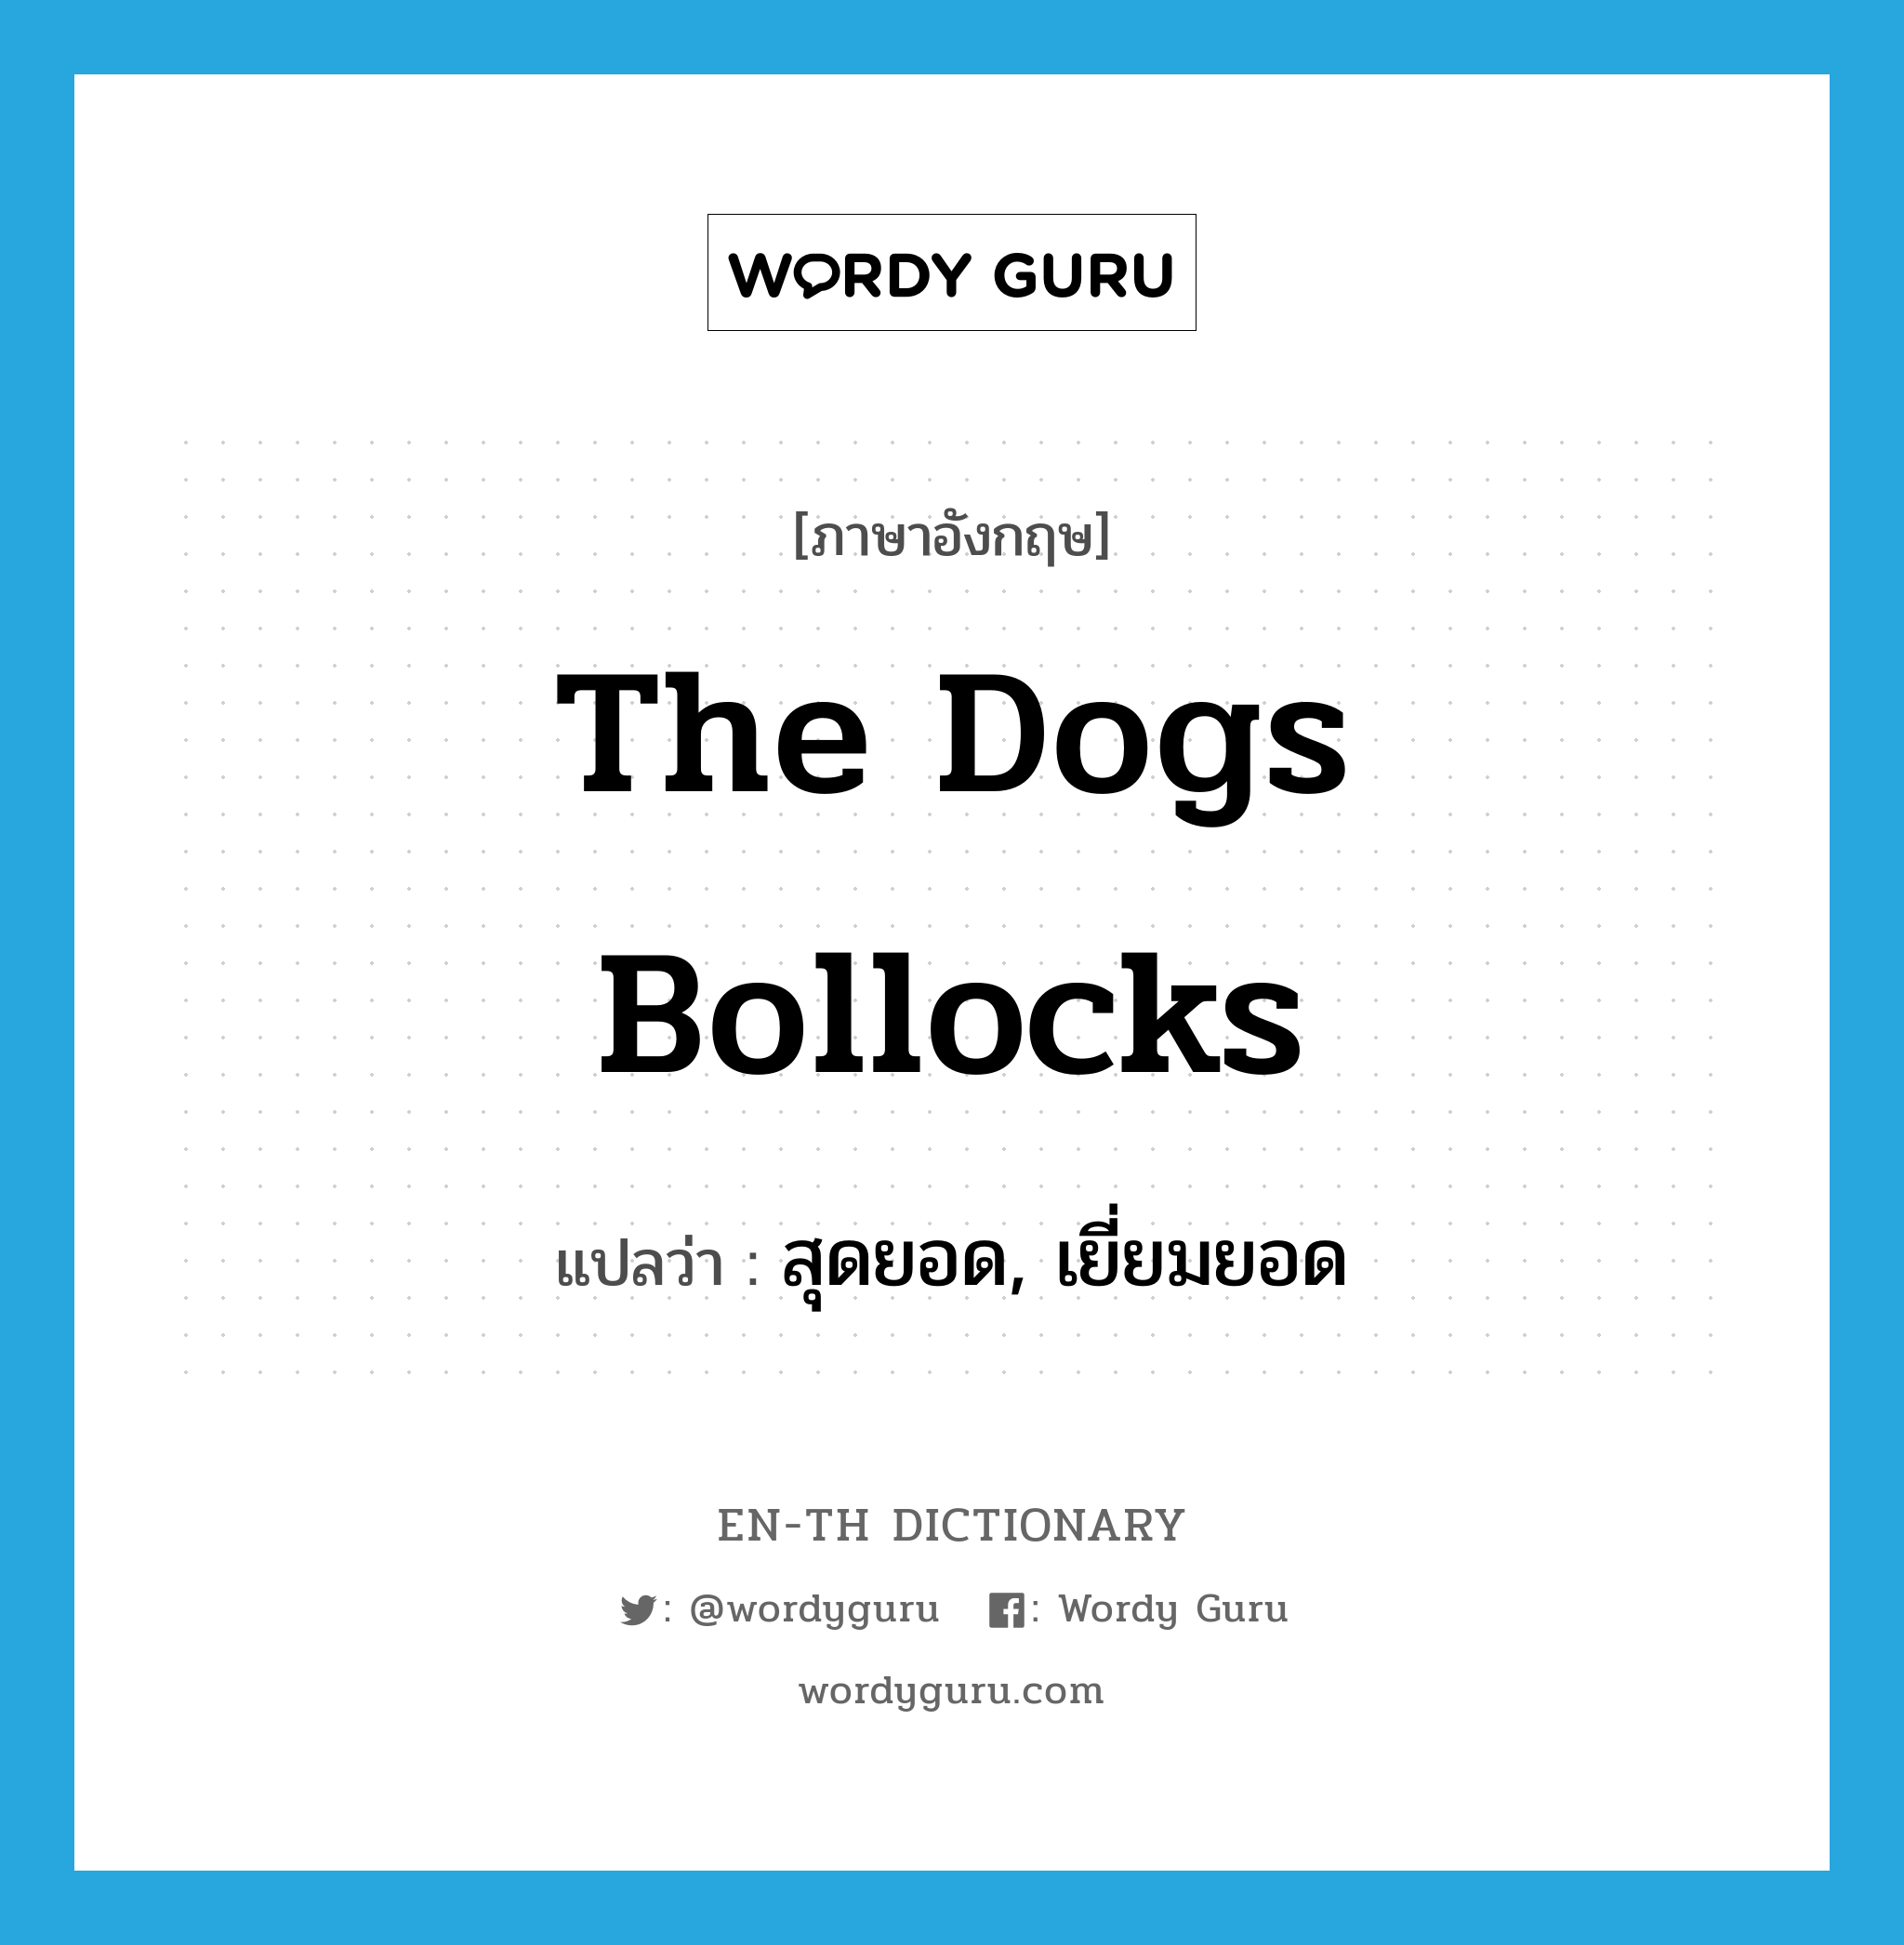 สุดยอด, เยี่ยมยอด ภาษาอังกฤษ?, คำศัพท์ภาษาอังกฤษ สุดยอด, เยี่ยมยอด แปลว่า the dogs bollocks ประเภท SL หมวด SL